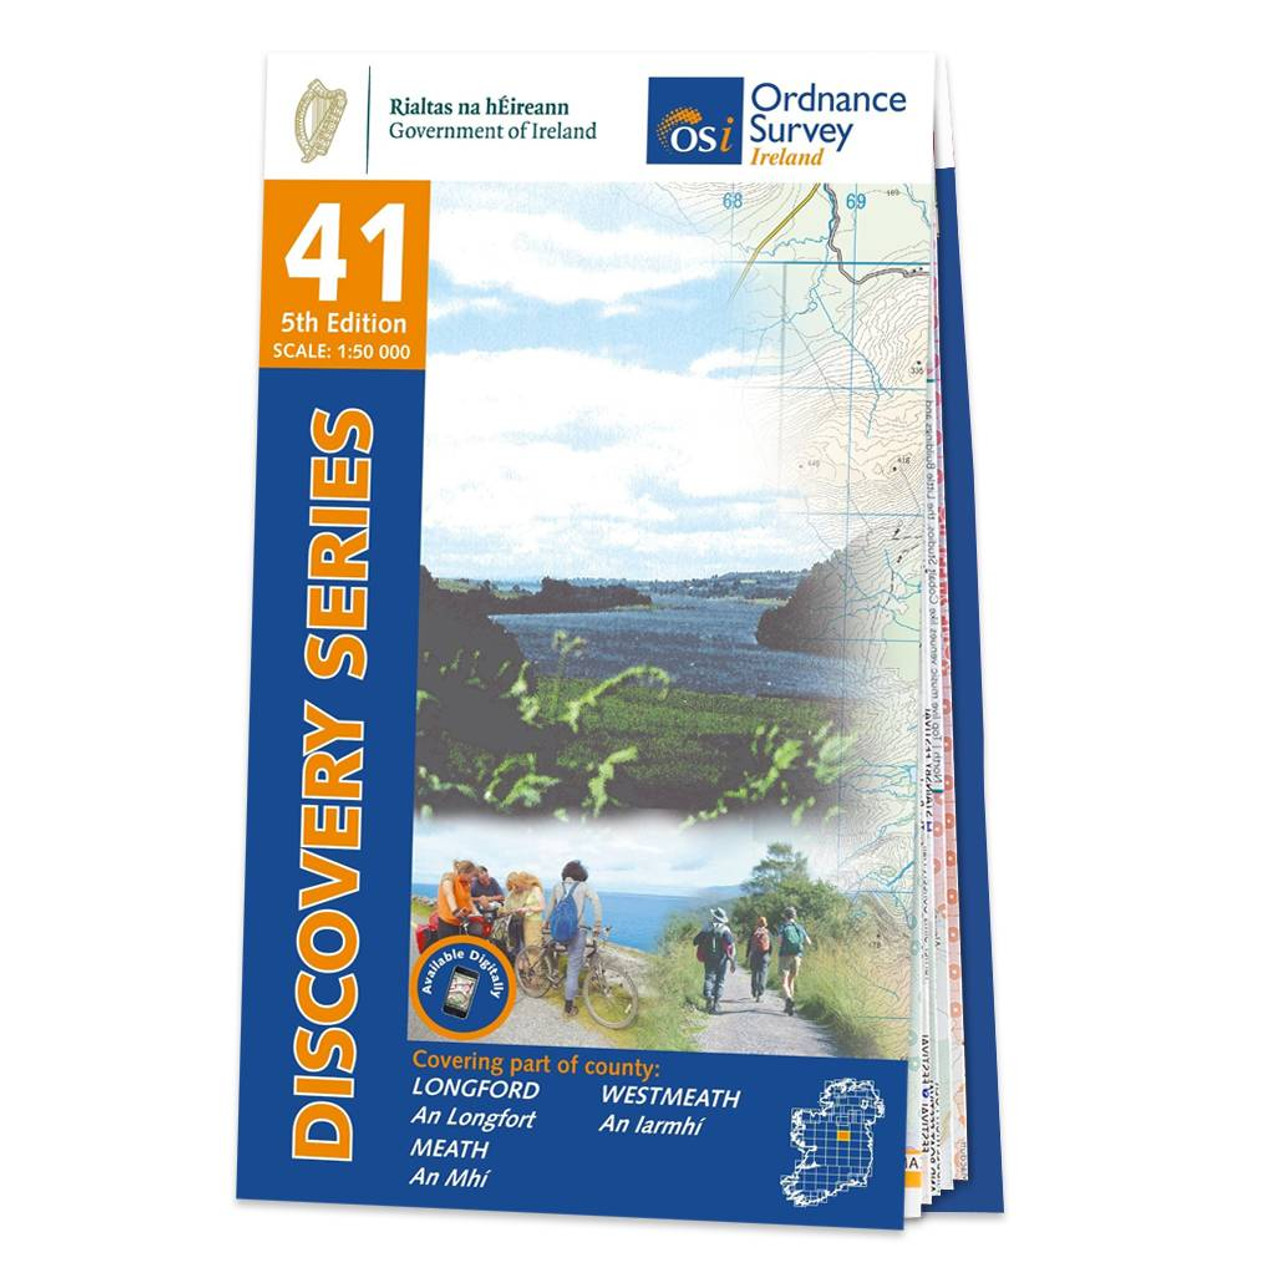 More Lake District Walks Guidebook